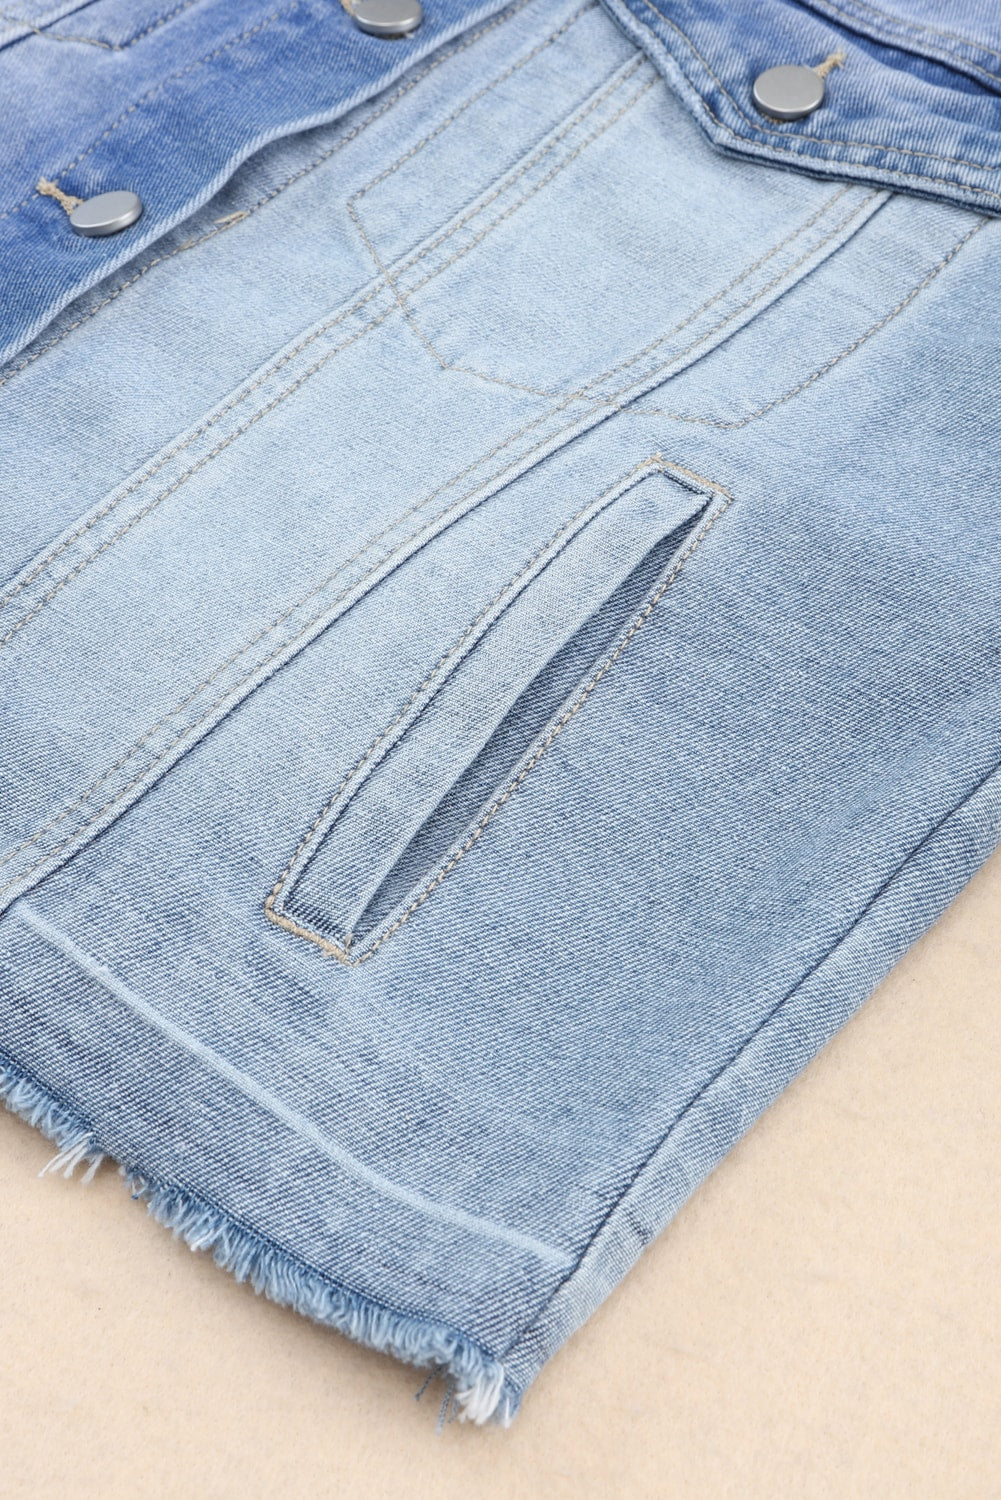 Veste en jean bleu ciel avec ourlet effiloché et patchwork